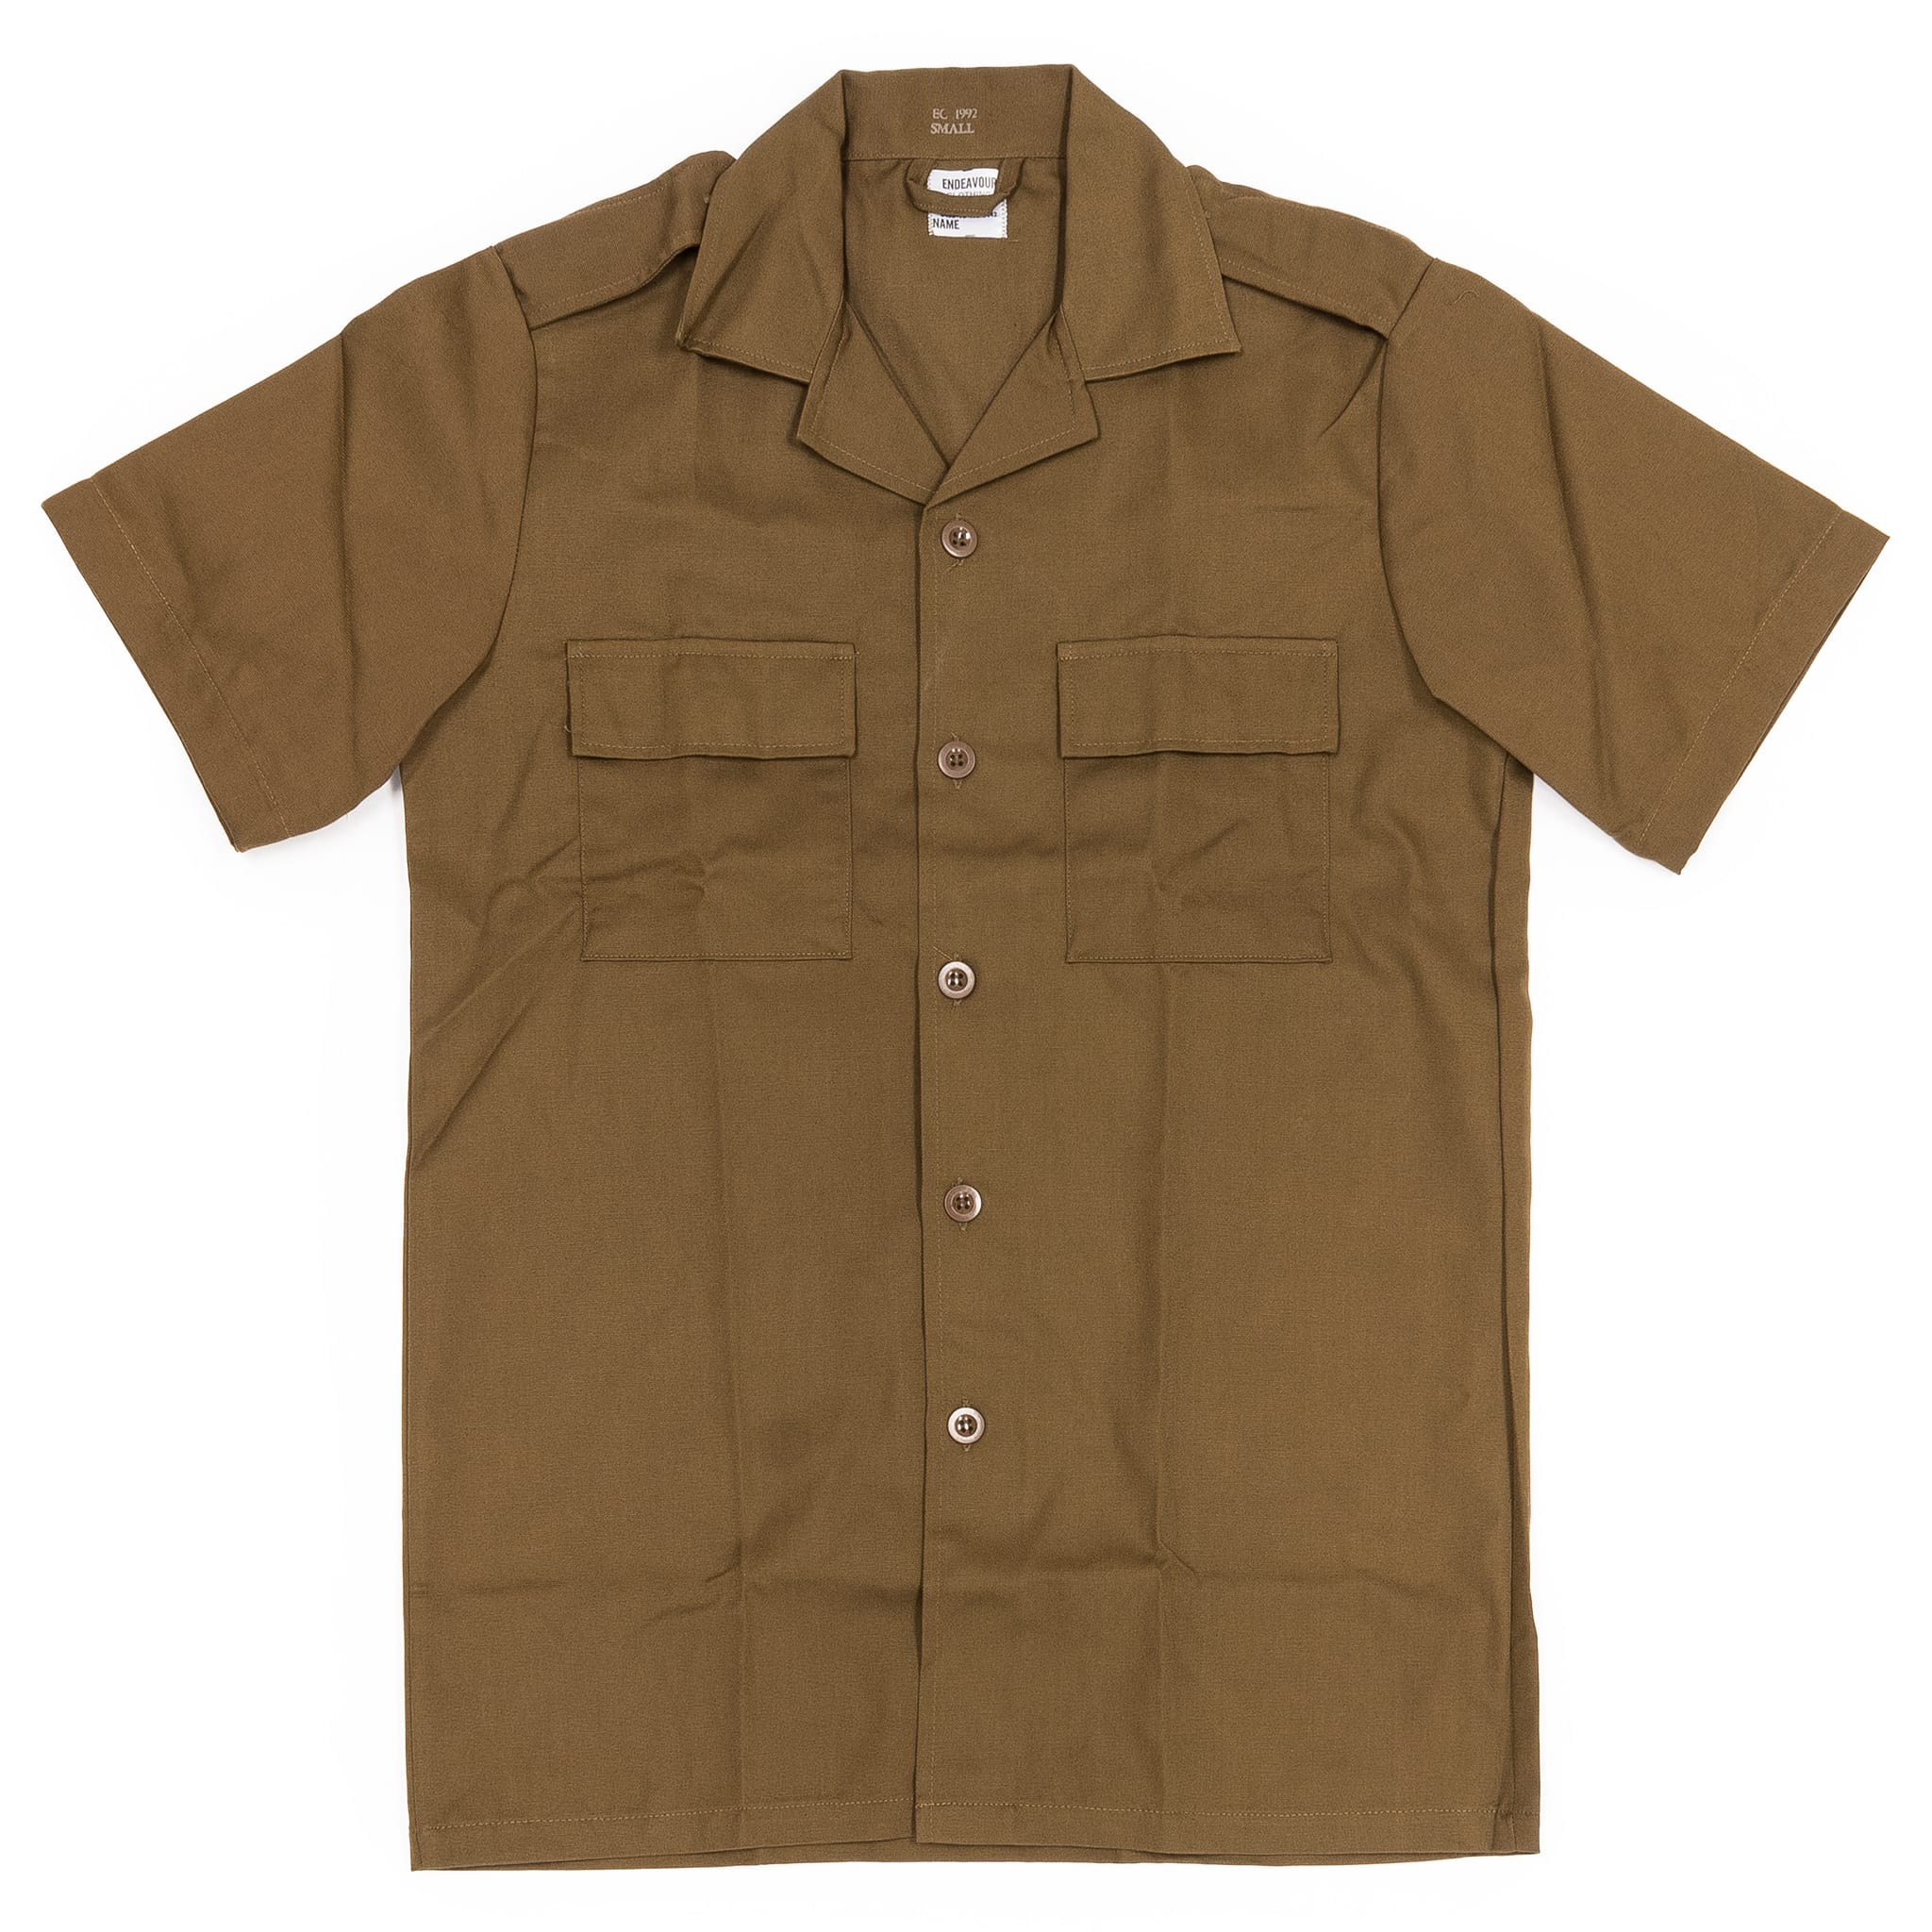 Tade Button-Up Shirt by rofeeak - Men's Short Sleeve Shirts - Afrikrea